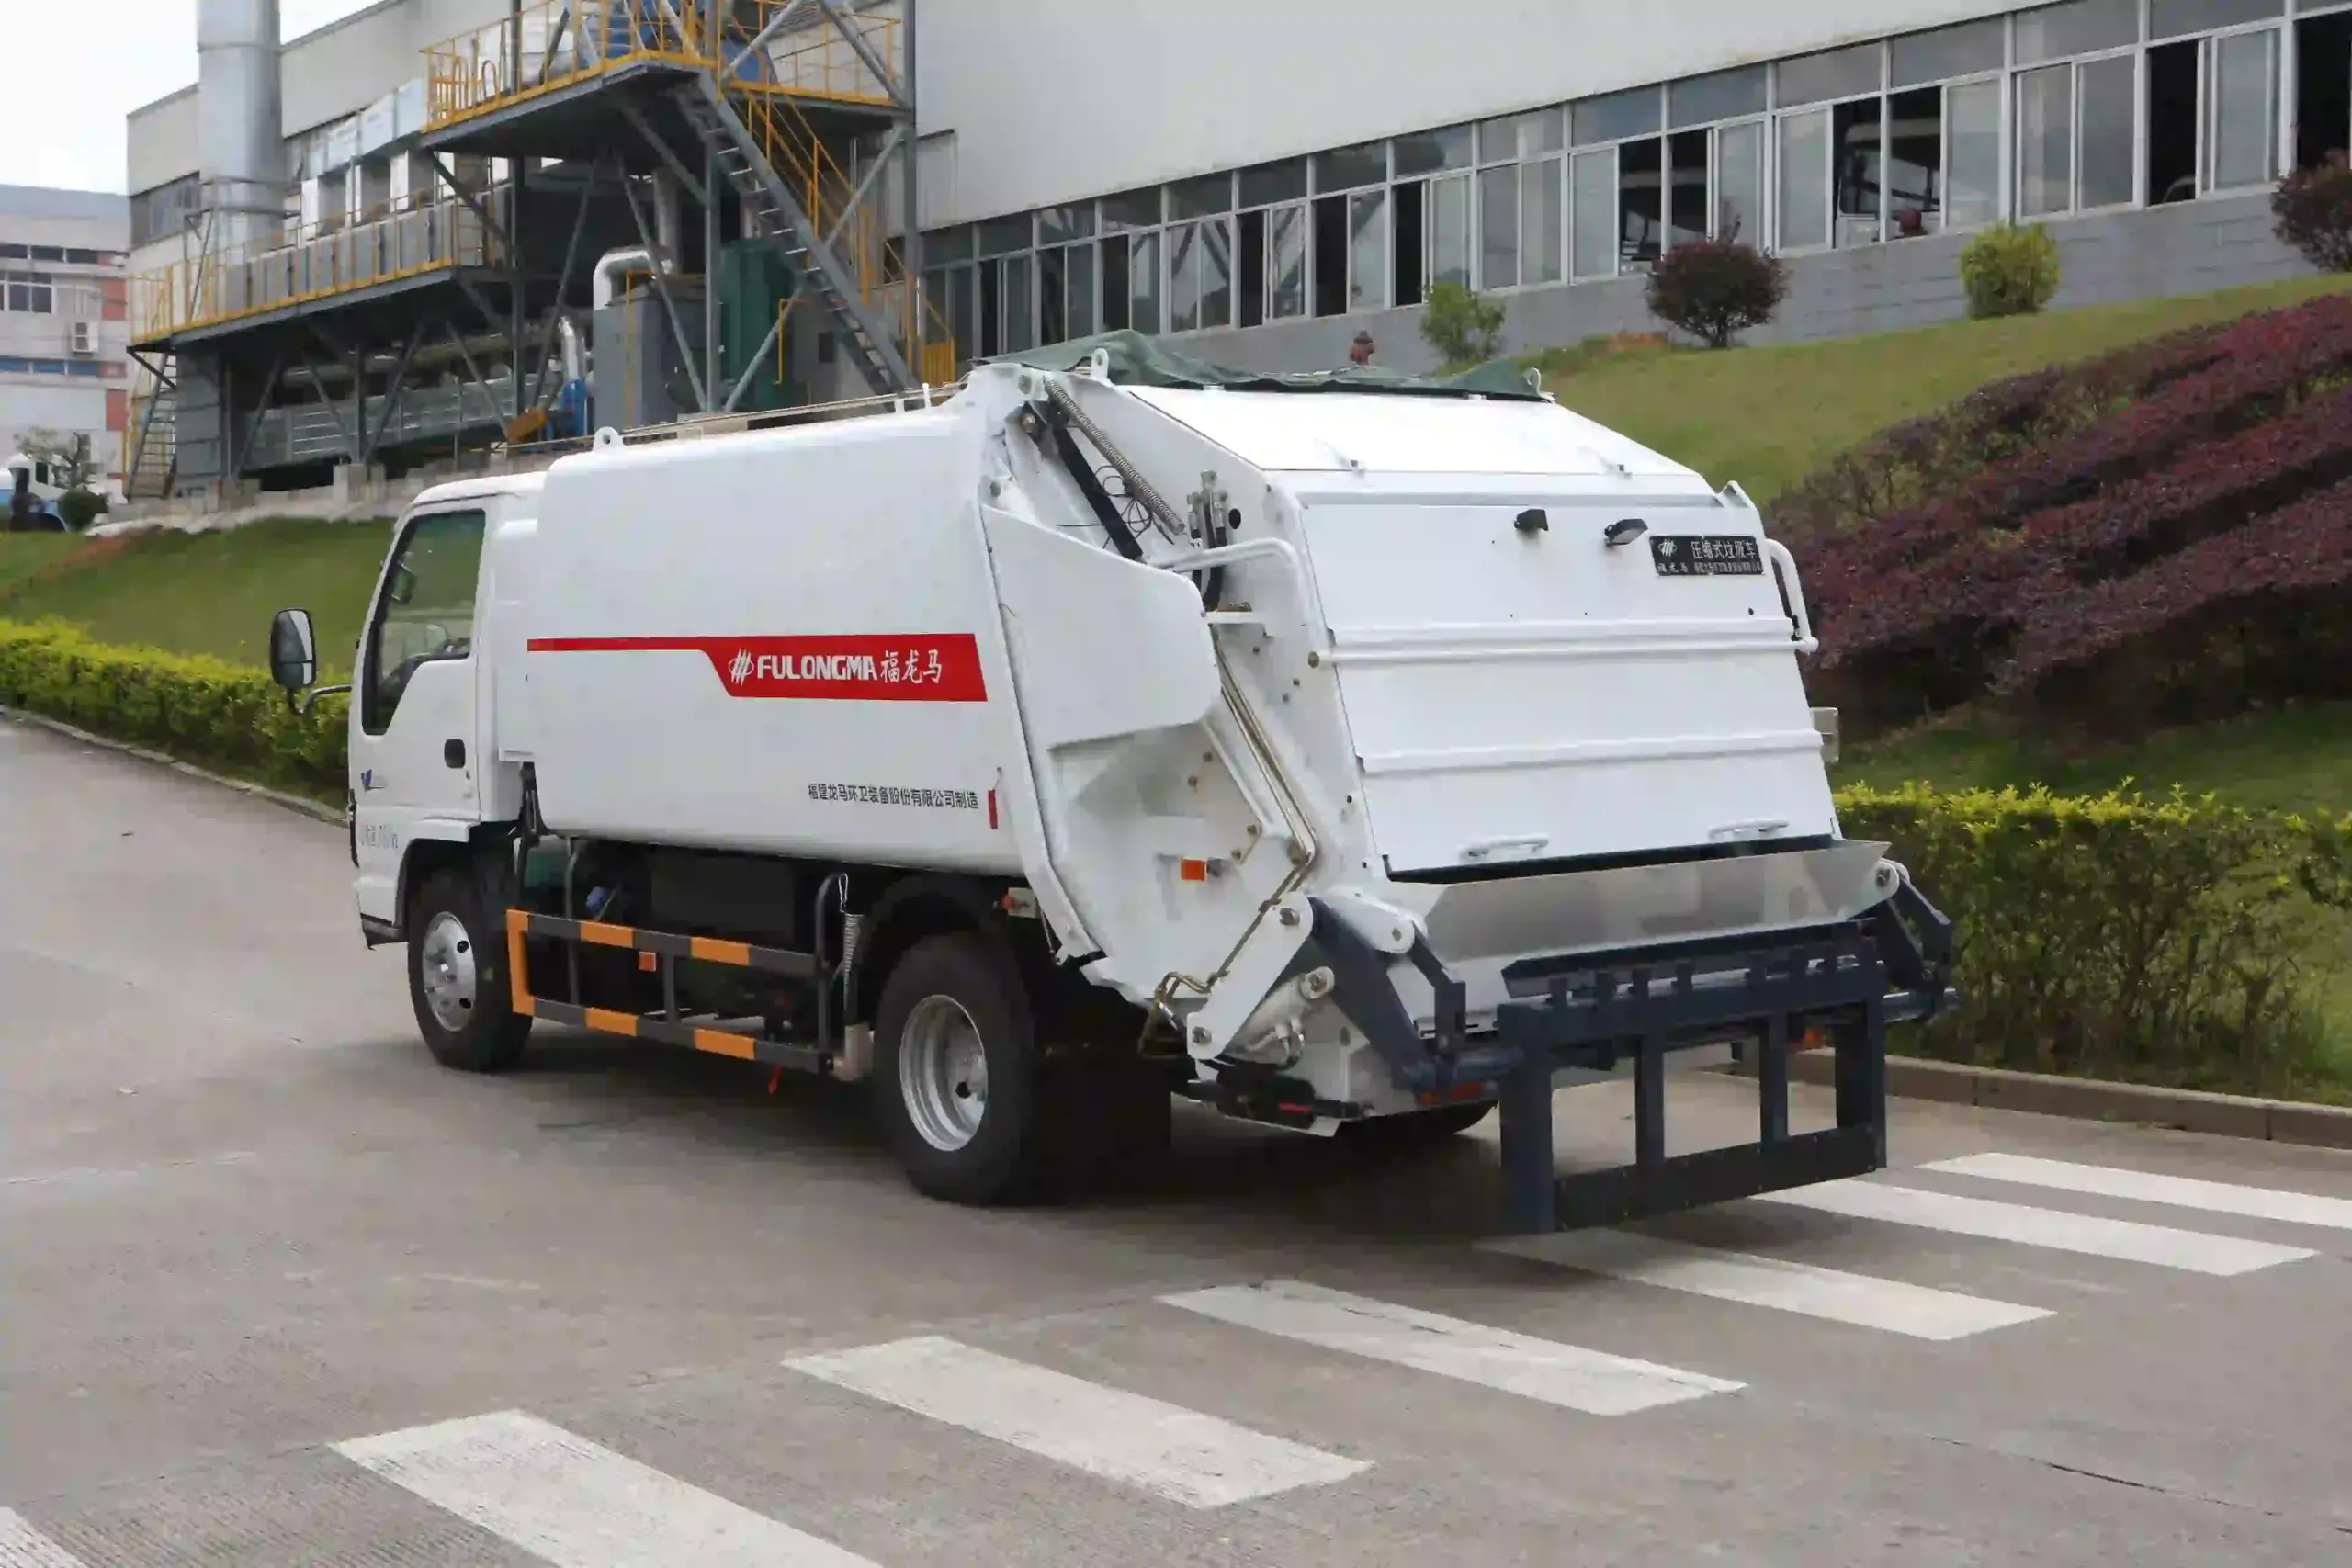 دستگاه حمل زباله اتوماتیک و مکانیزه شهرداری برای حمل زباله